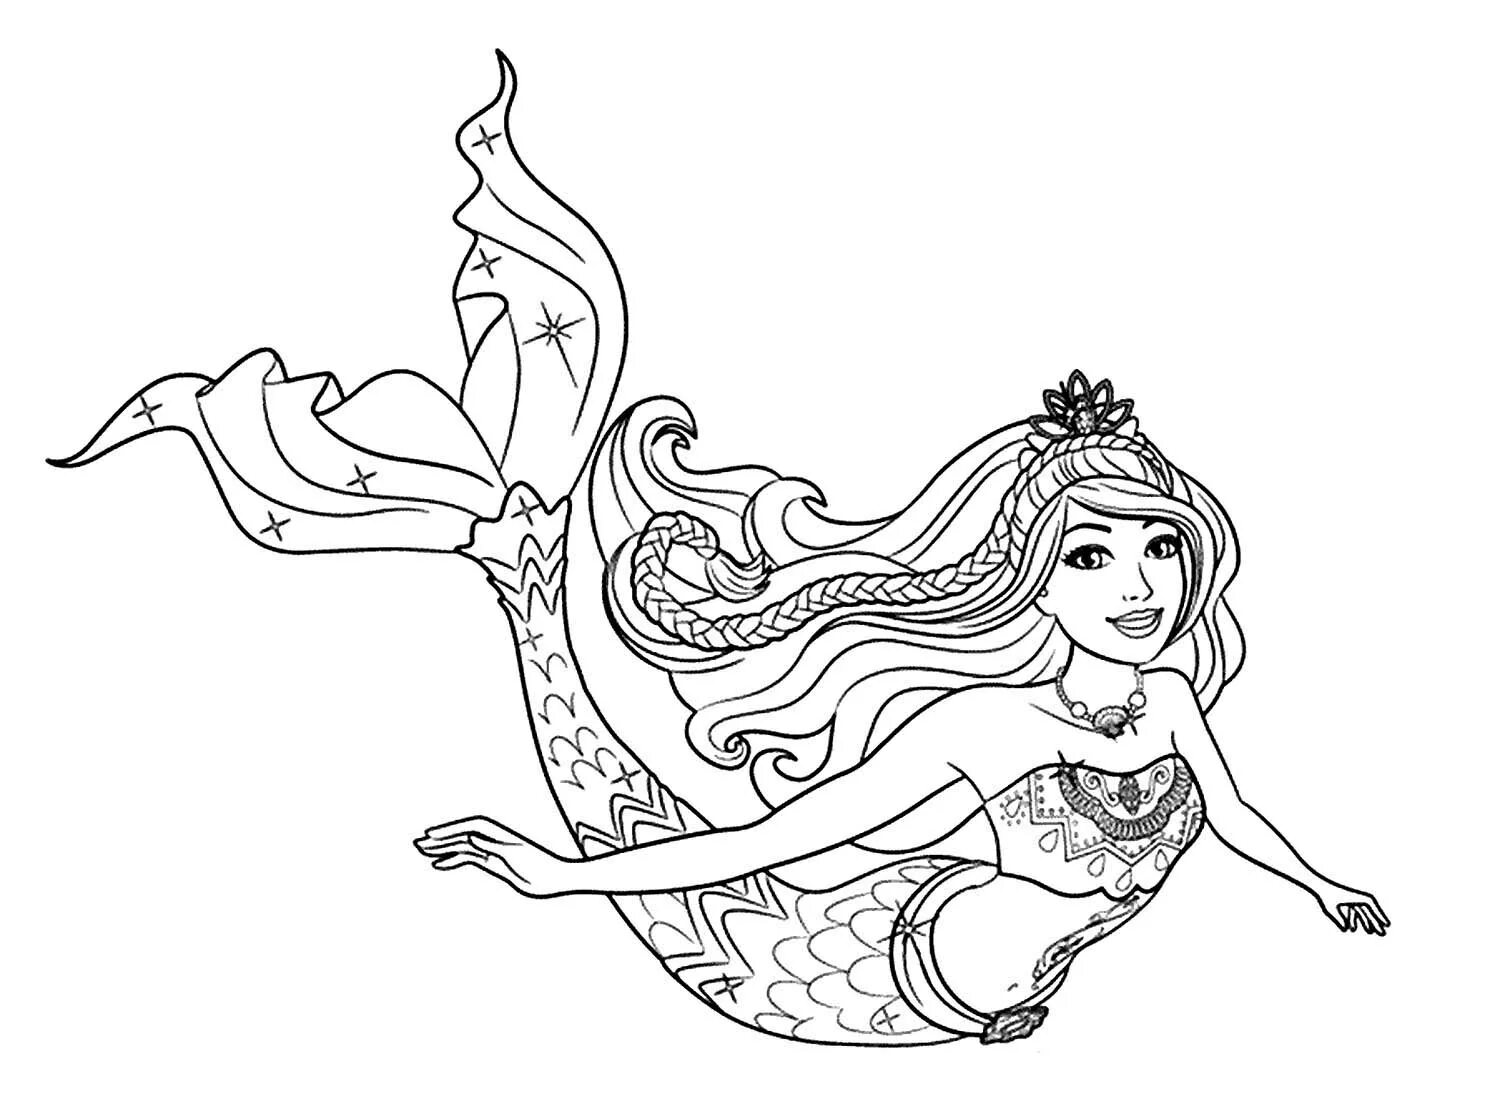 Mermaid queen #1